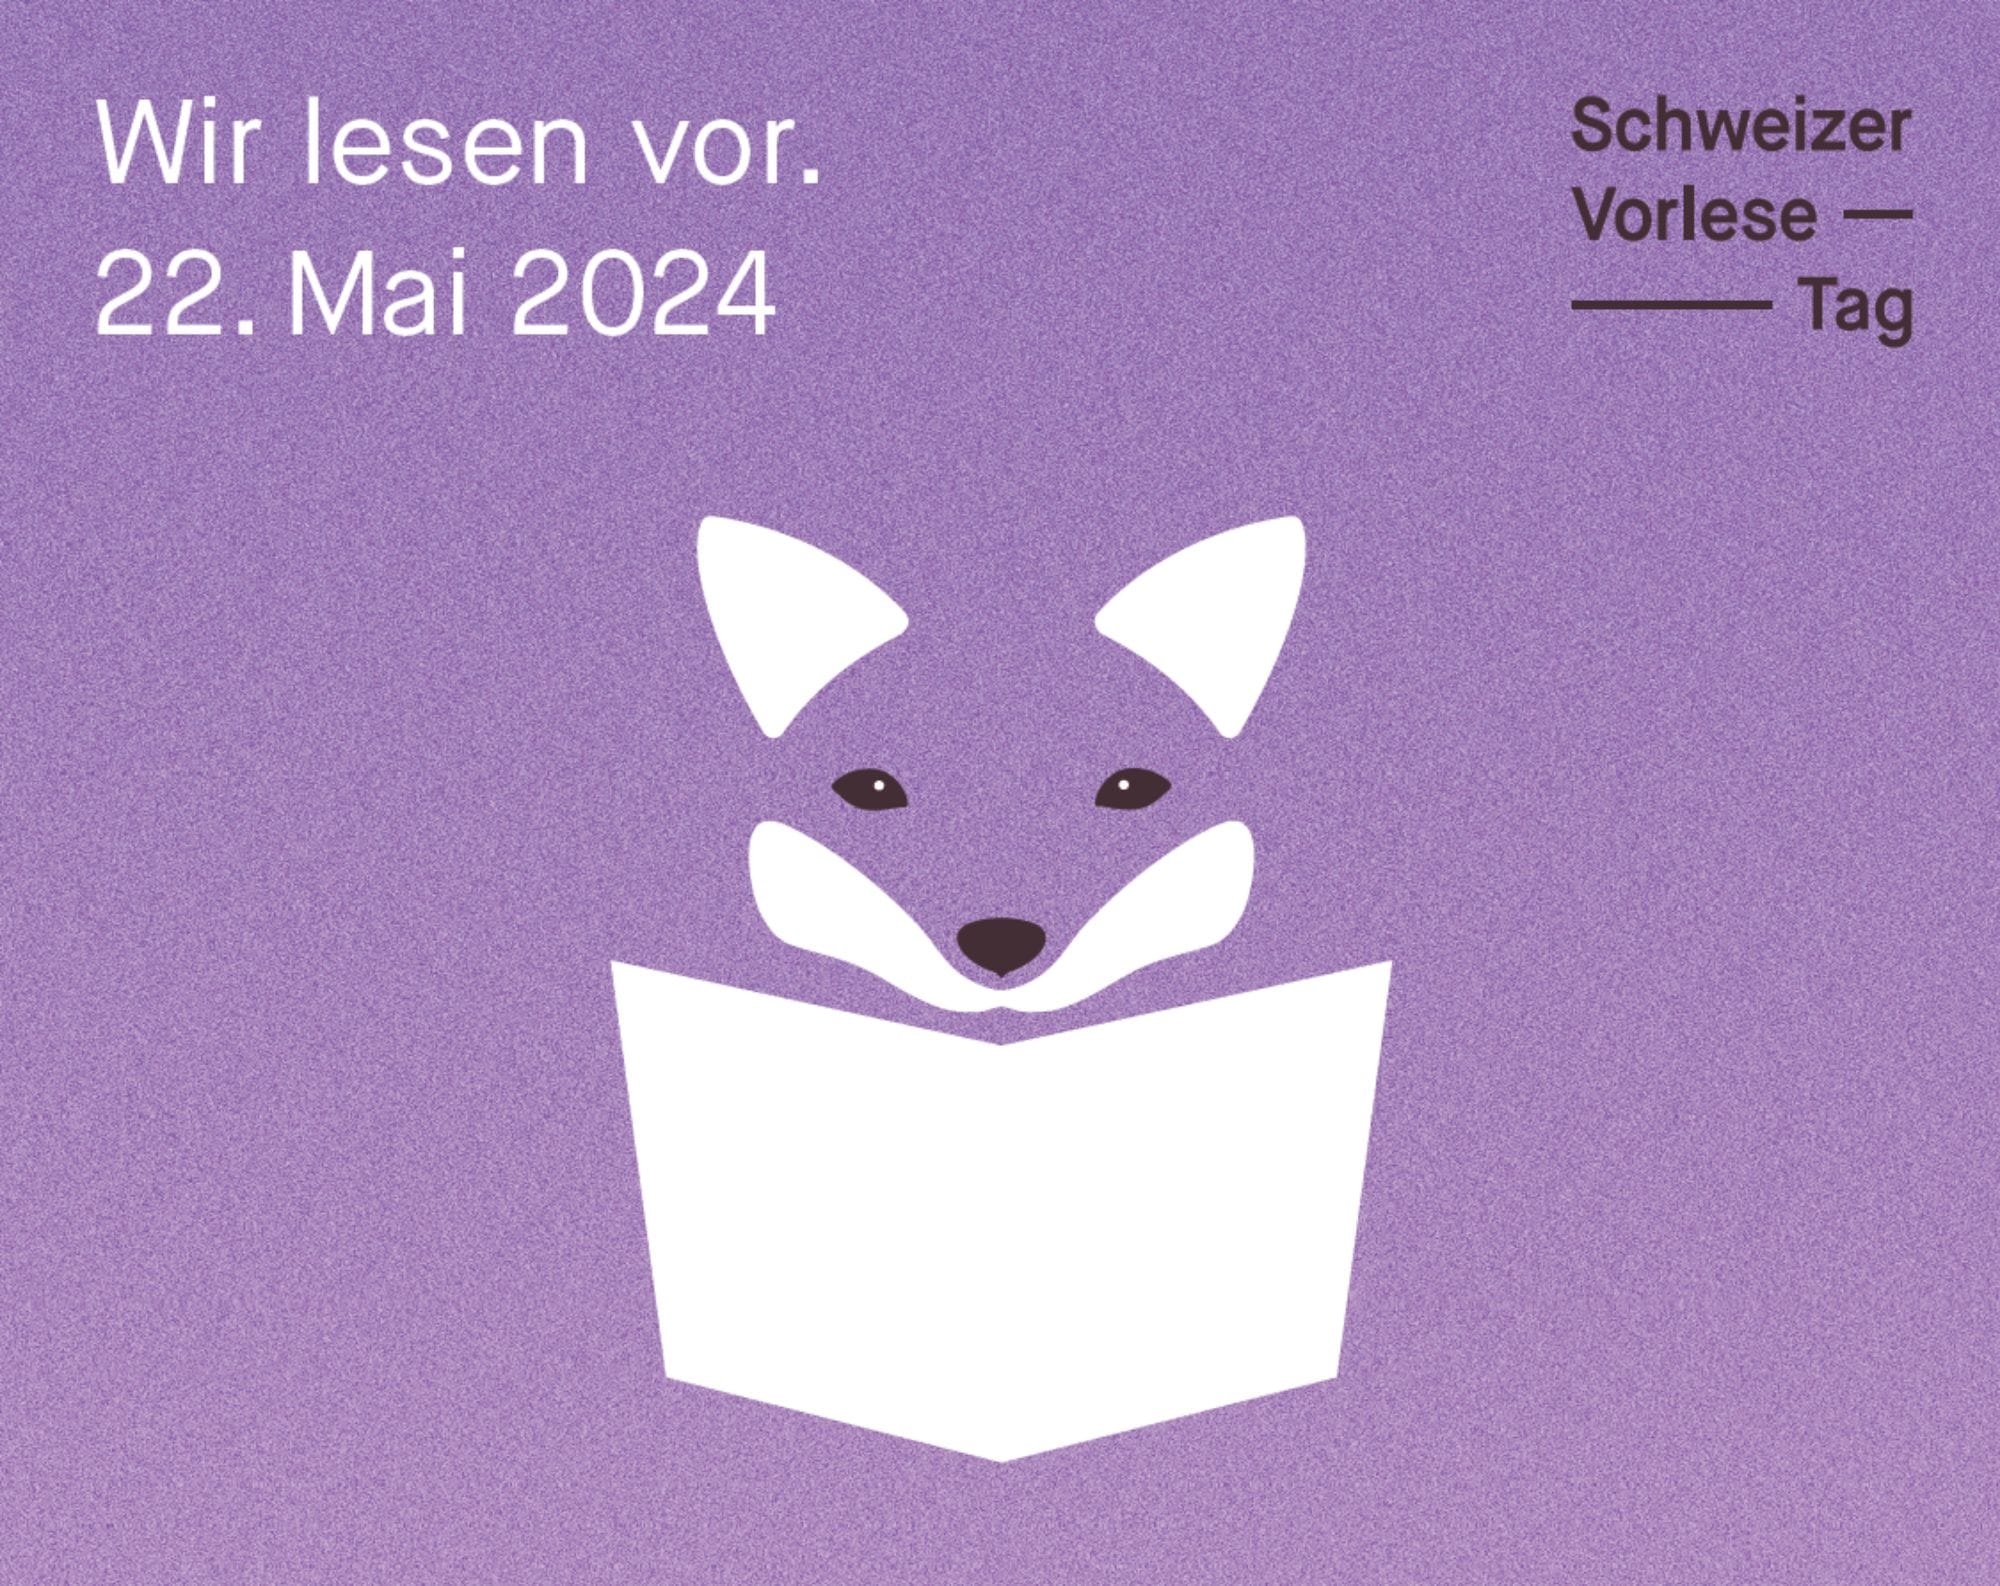 Schweizer Vorlesetag 22. Mai 2024